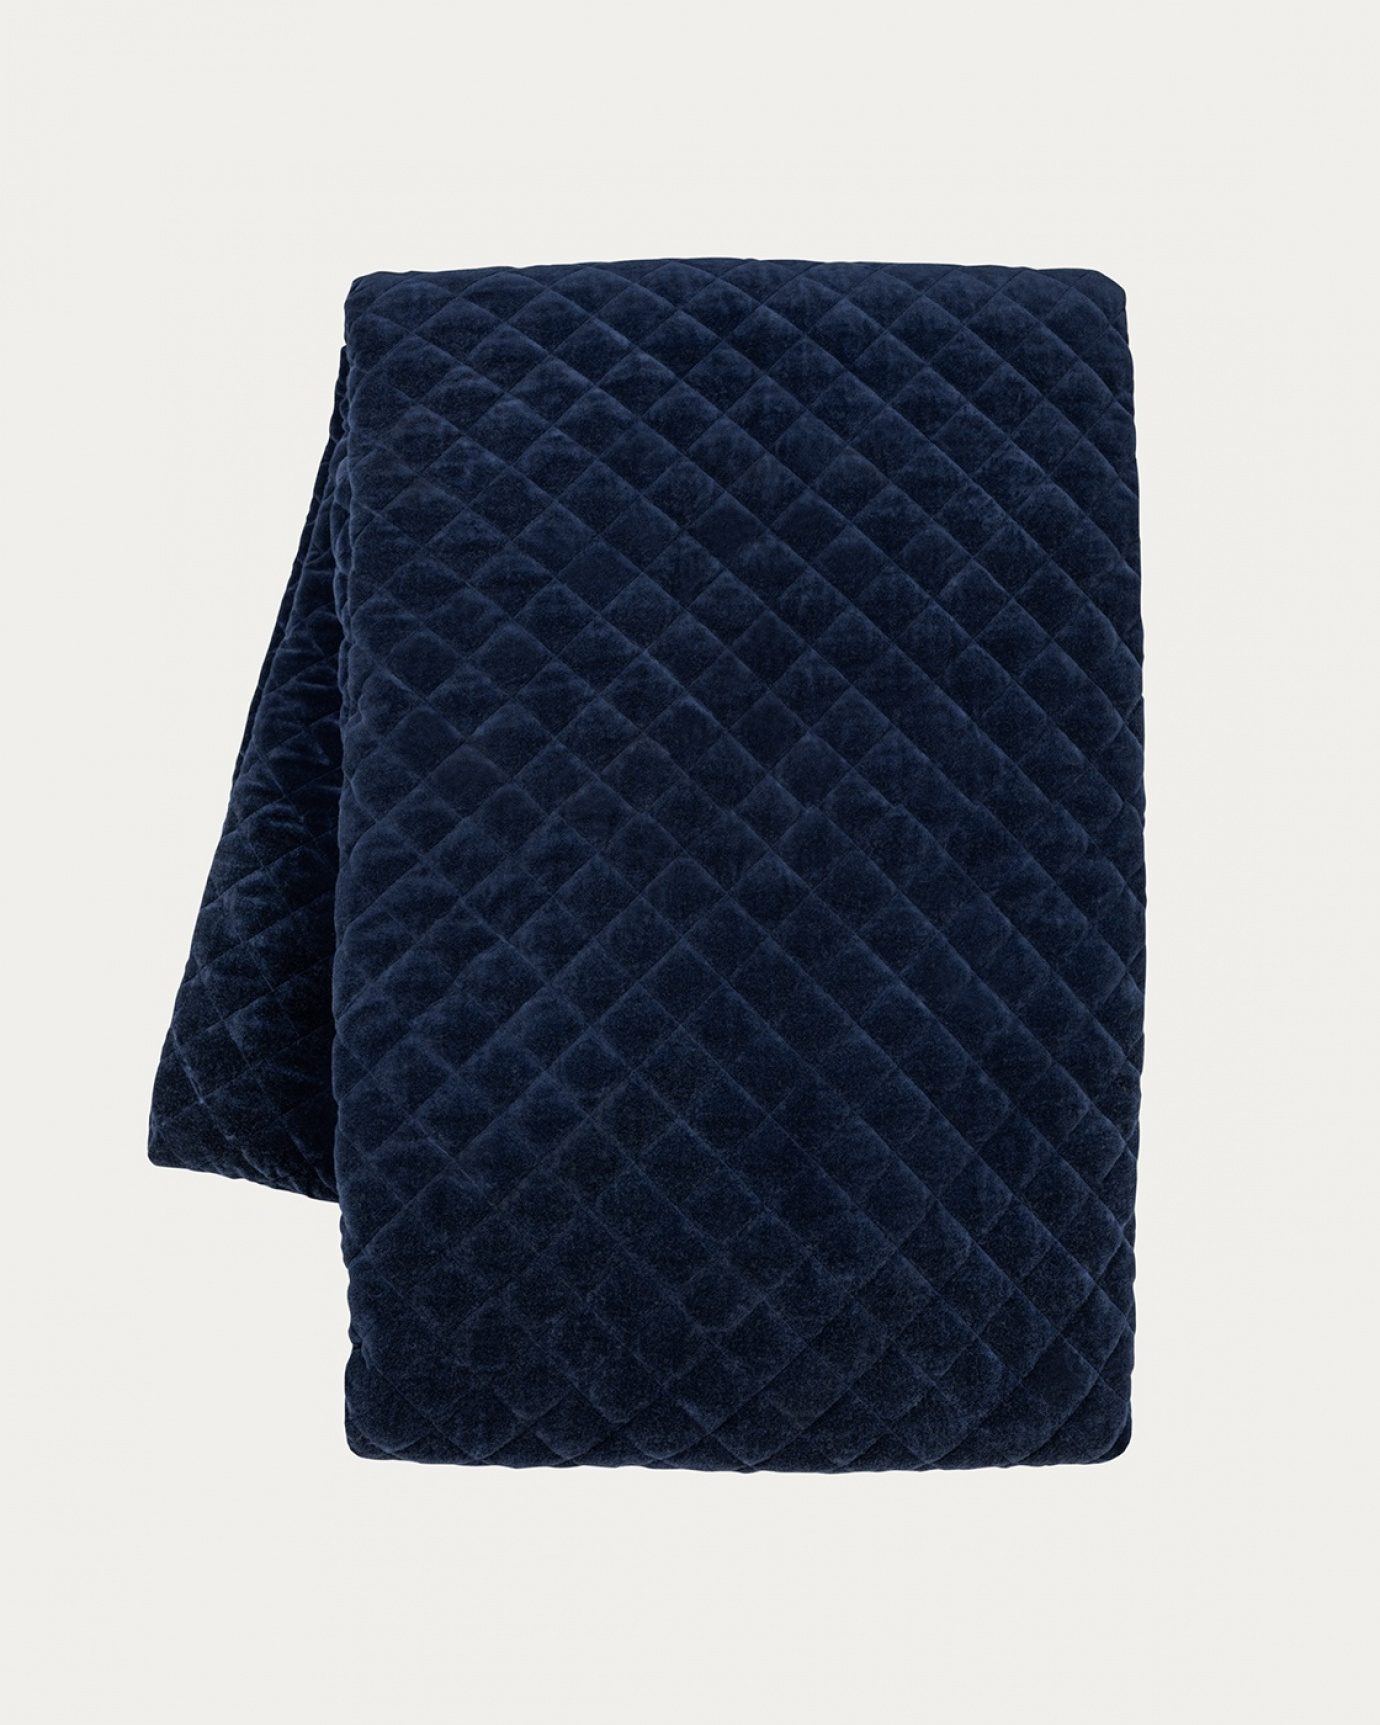 Immagine prodotto blu inchiostro PICCOLO copriletto in morbido velluto di cotone per letto singolo di LINUM DESIGN. Dimensioni 170x260 cm.